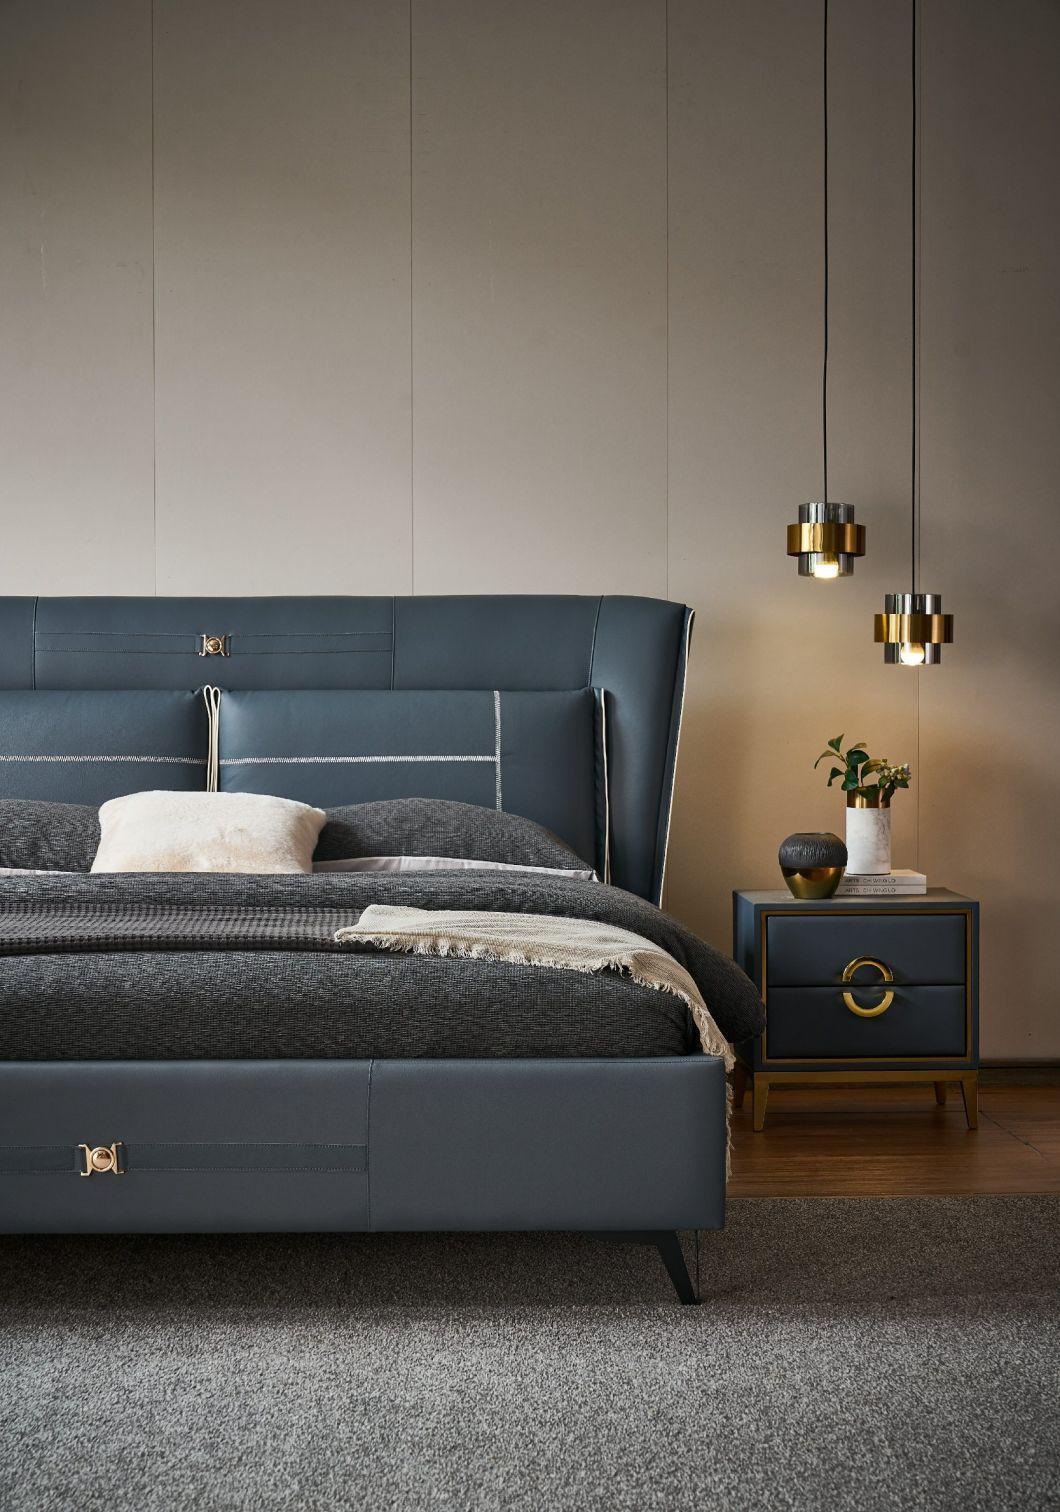 New Bed Designer Beds Bedroom Furniture Set King Bed Leather Bed a-GF007